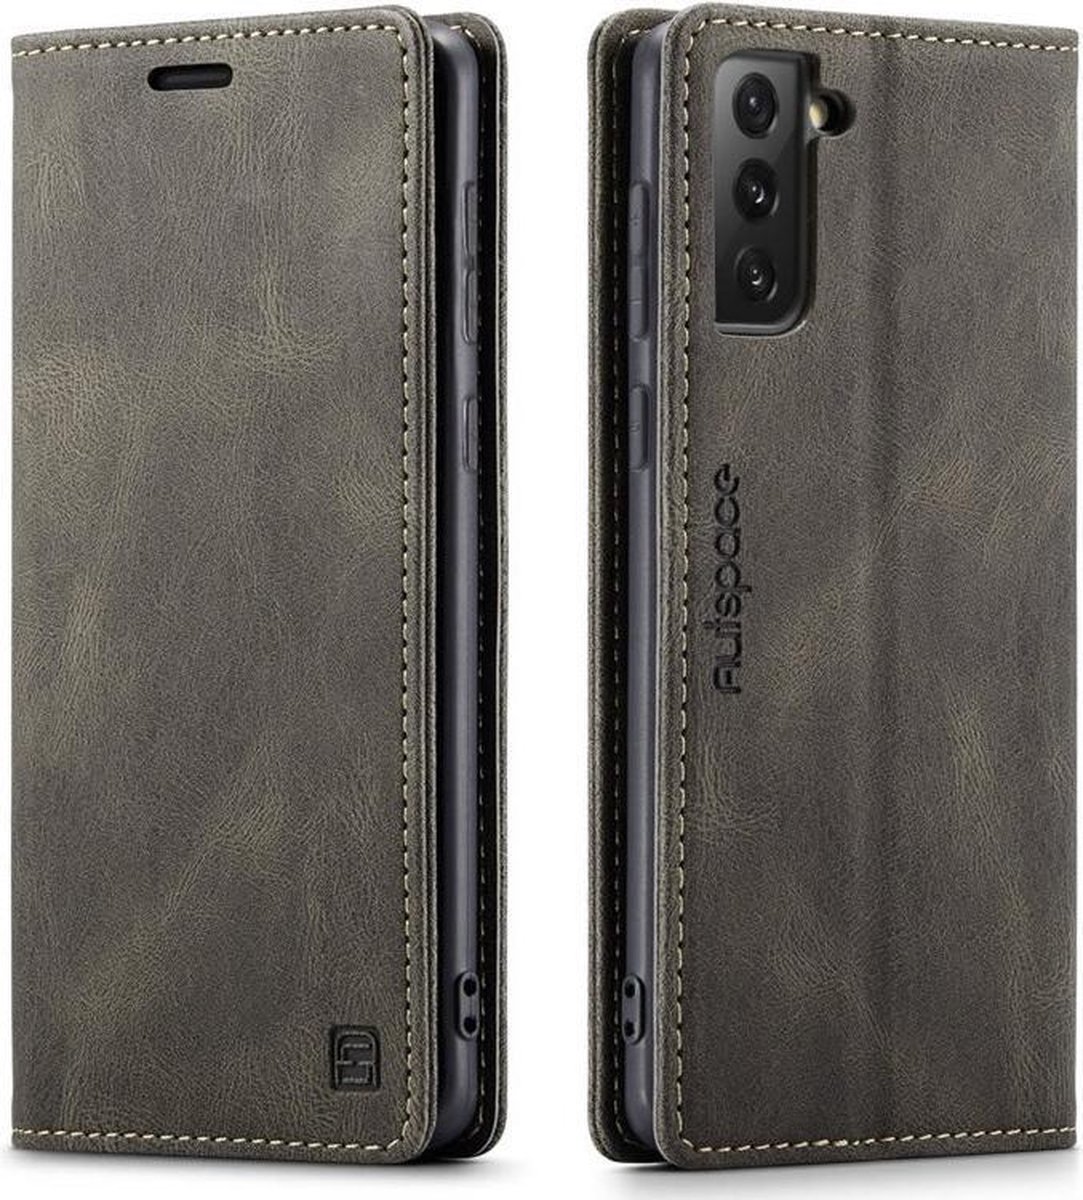 AutSpace - Samsung Galaxy S21 Ultra hoesje - Wallet Book Case - Magneetsluiting - met RFID bescherming - Bruin